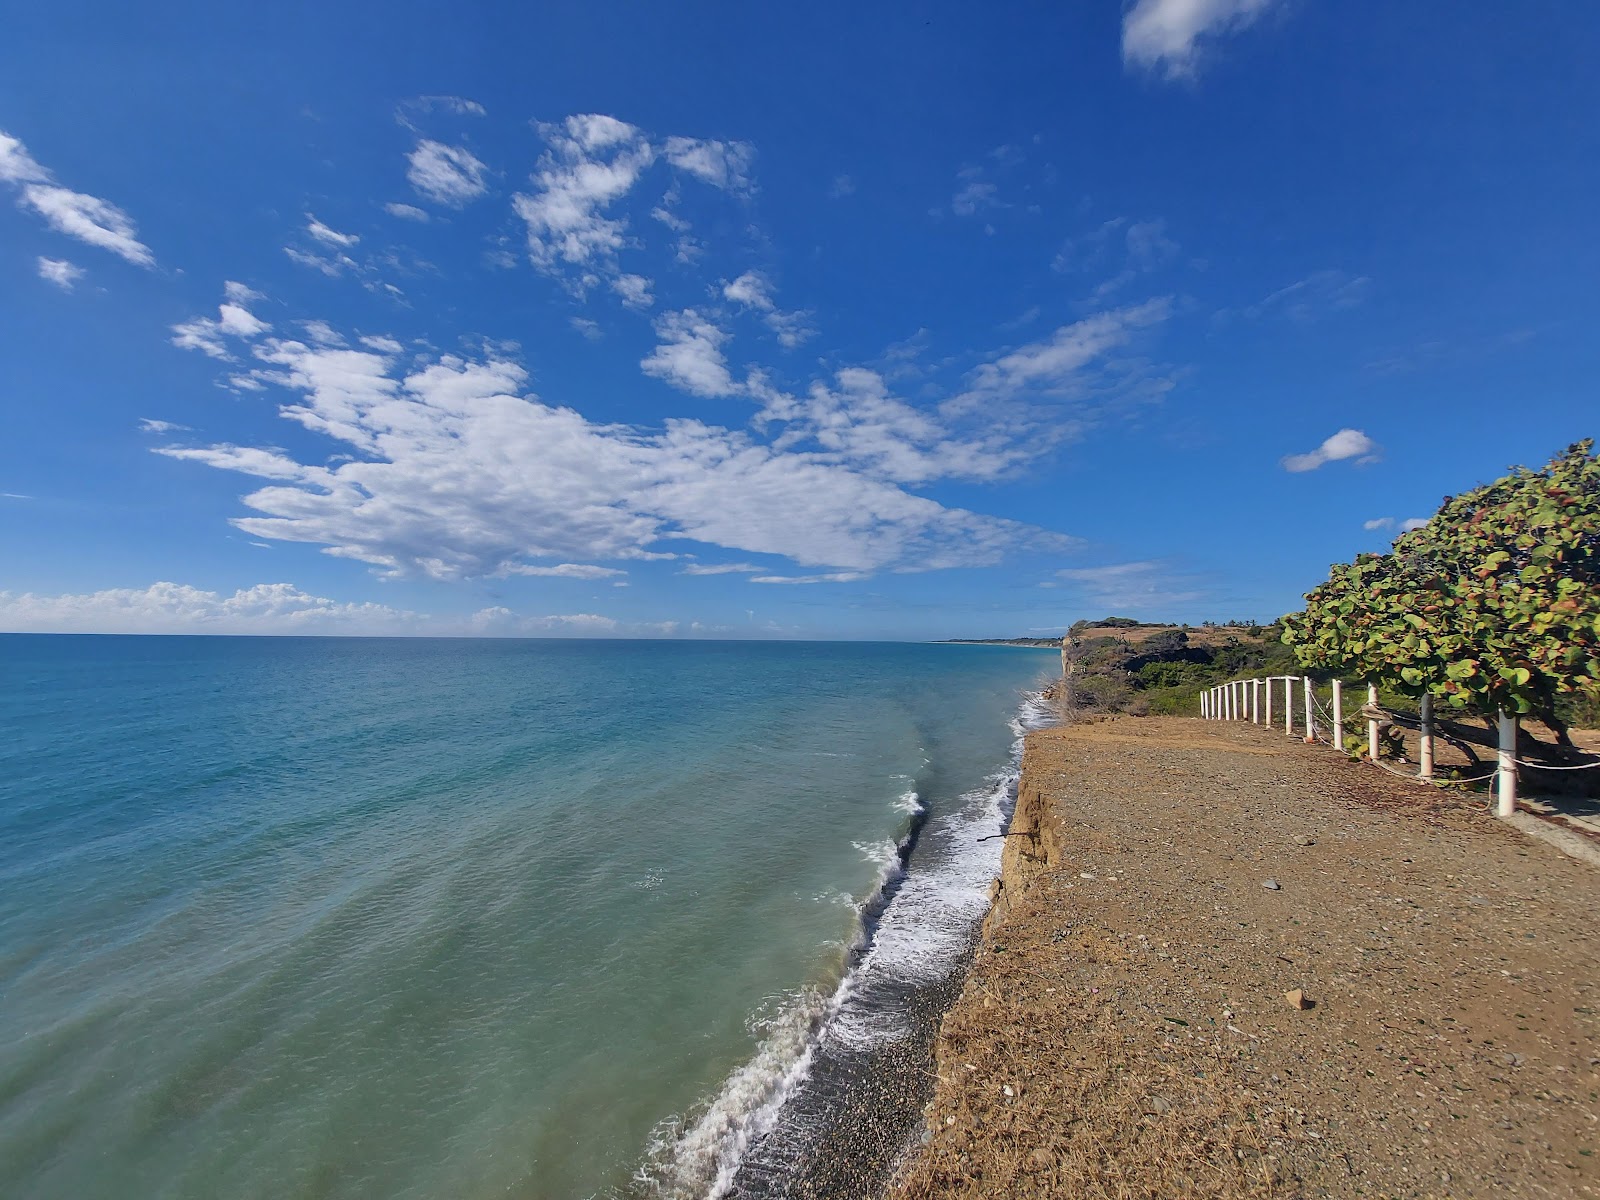 Valokuva Playa Matanzasista. pinnalla harmaa hieno pikkukivi:n kanssa